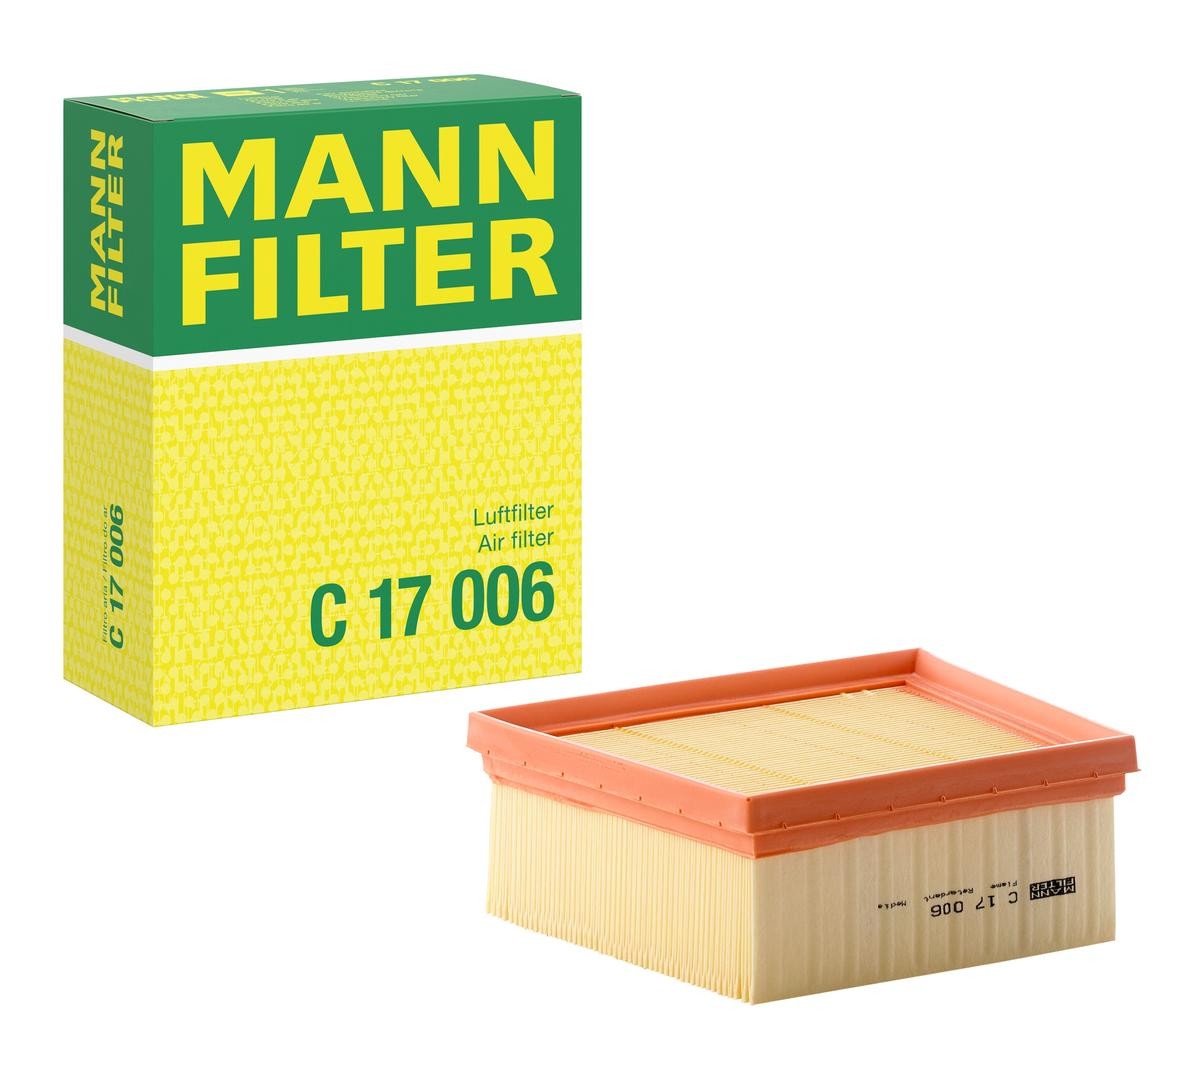 MANN-FILTER 70mm, 198mm, 161mm, Filter Insert Length: 161mm, Width: 198mm, Height: 70mm Engine air filter C 17 006 buy